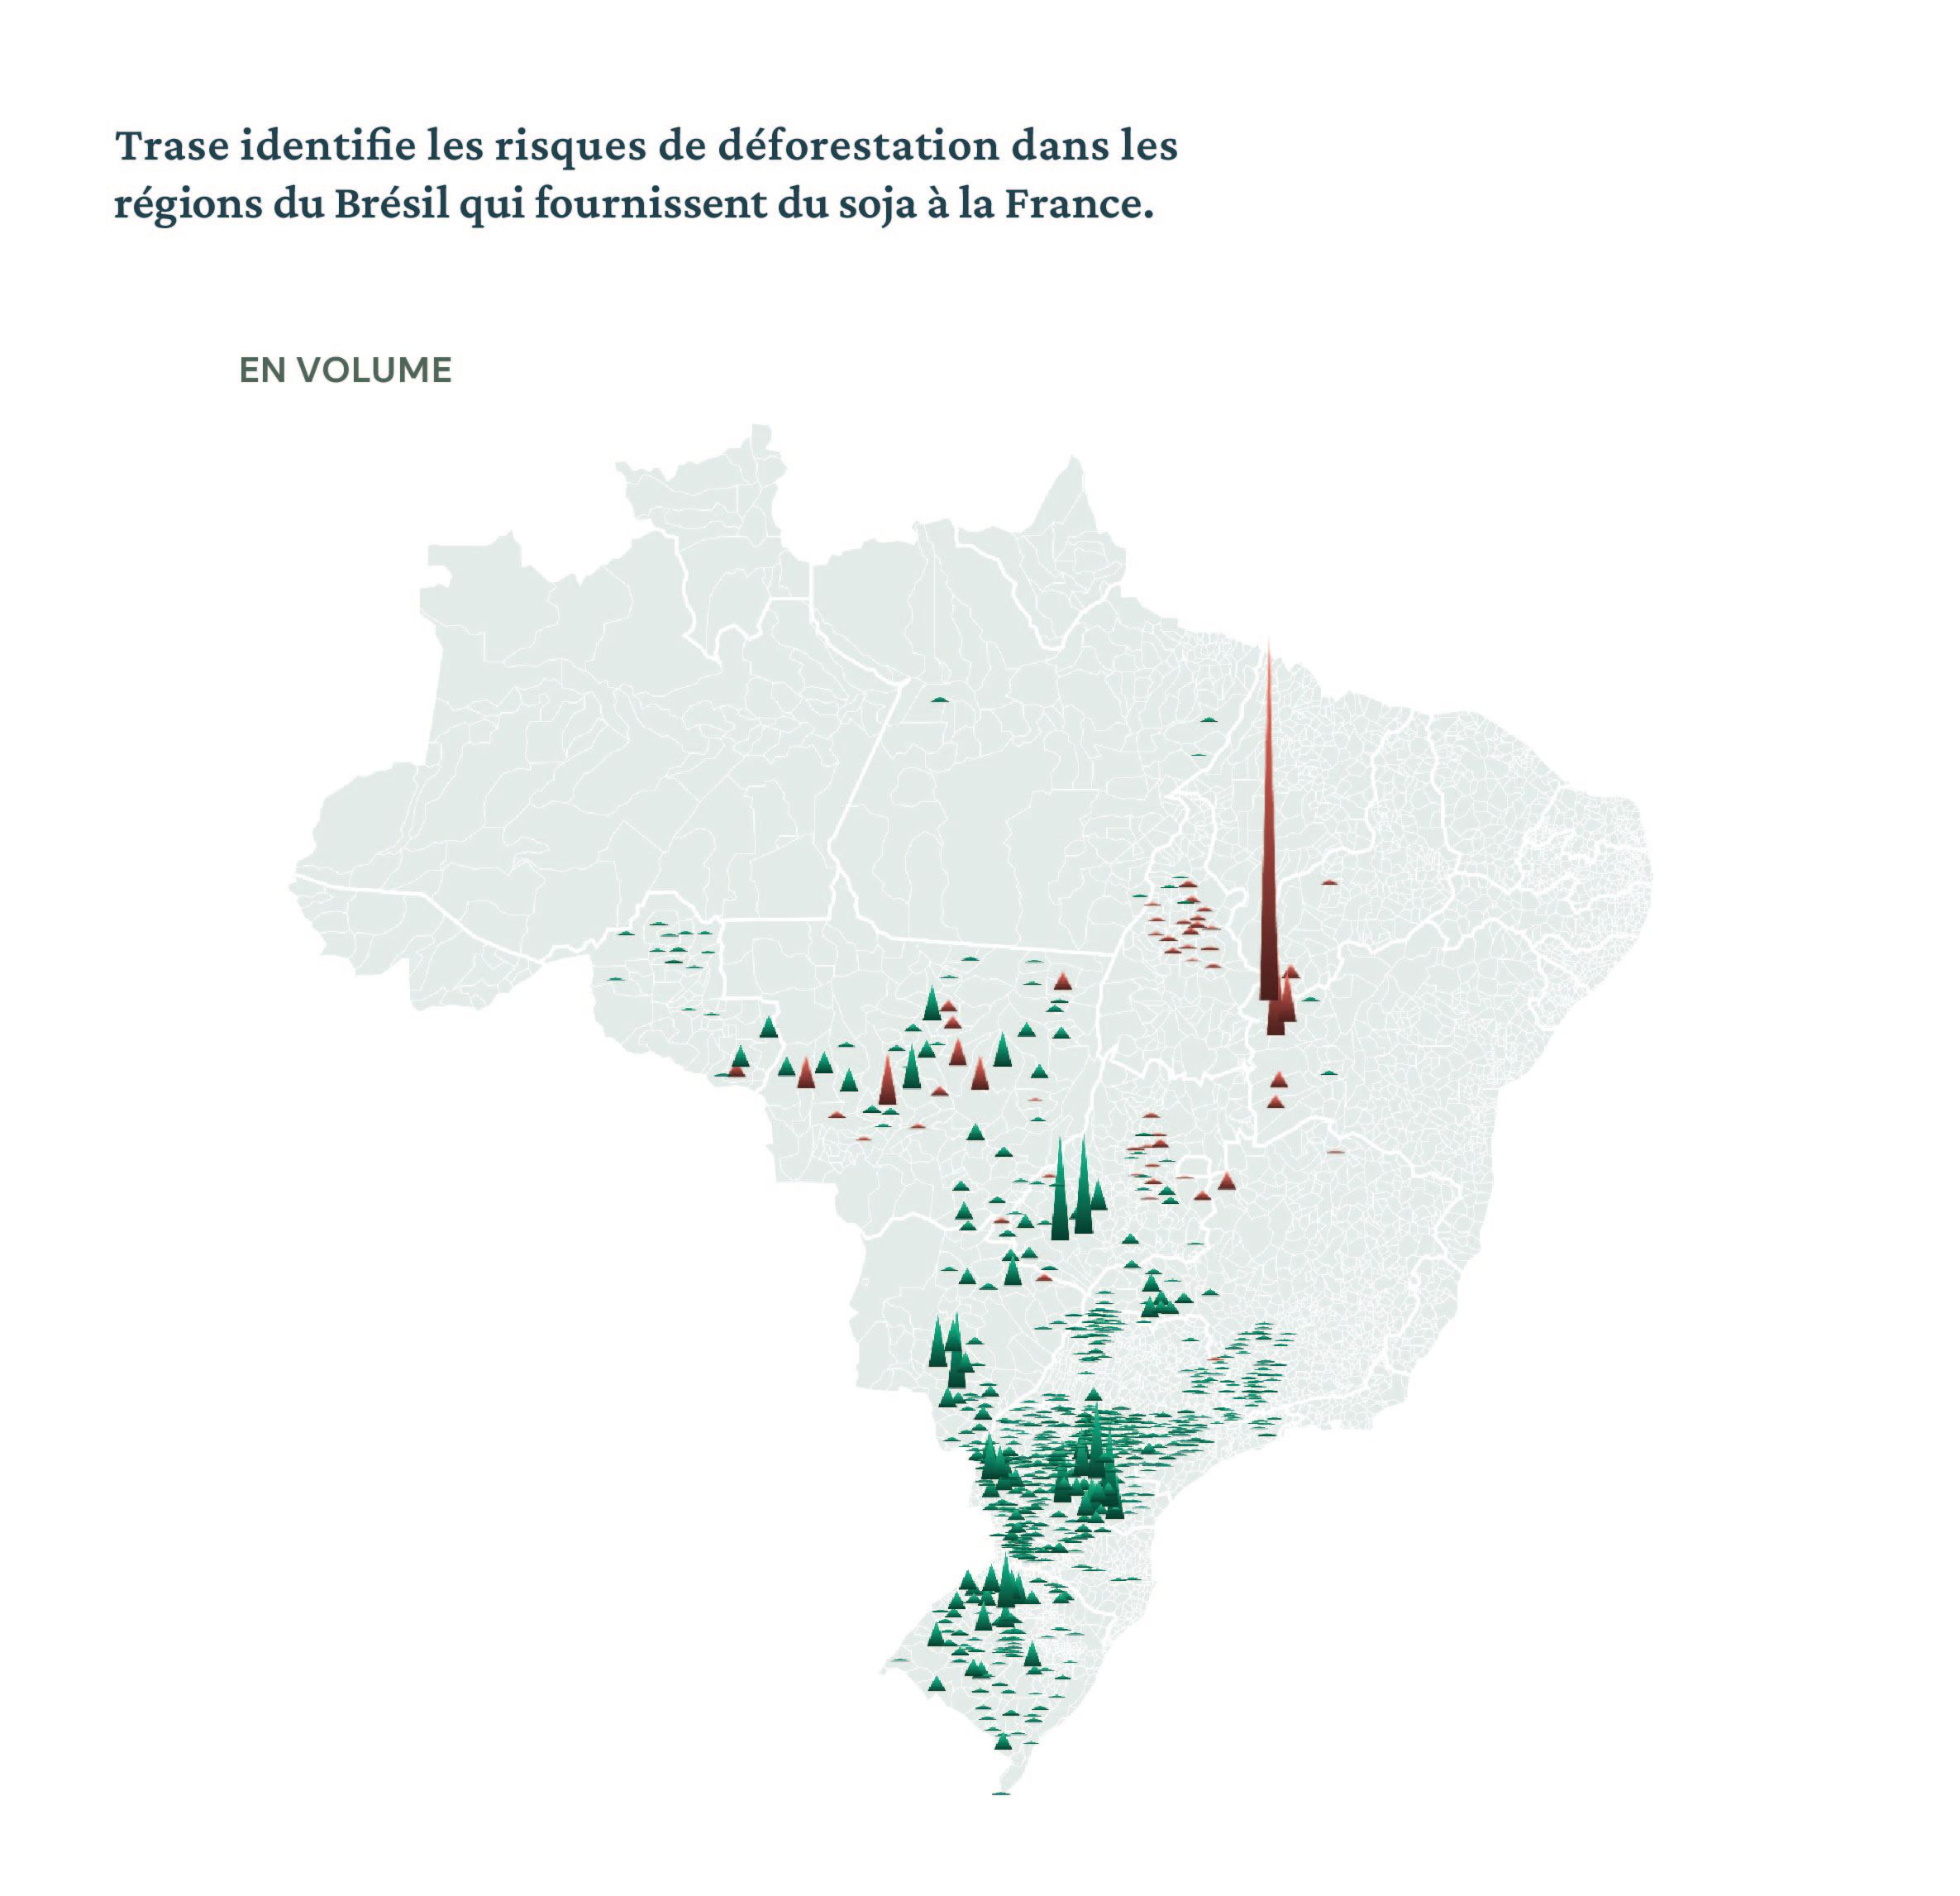 Trase identifie les risques de déforestation dans les régions du Brésil qui fournissent du soja à la France